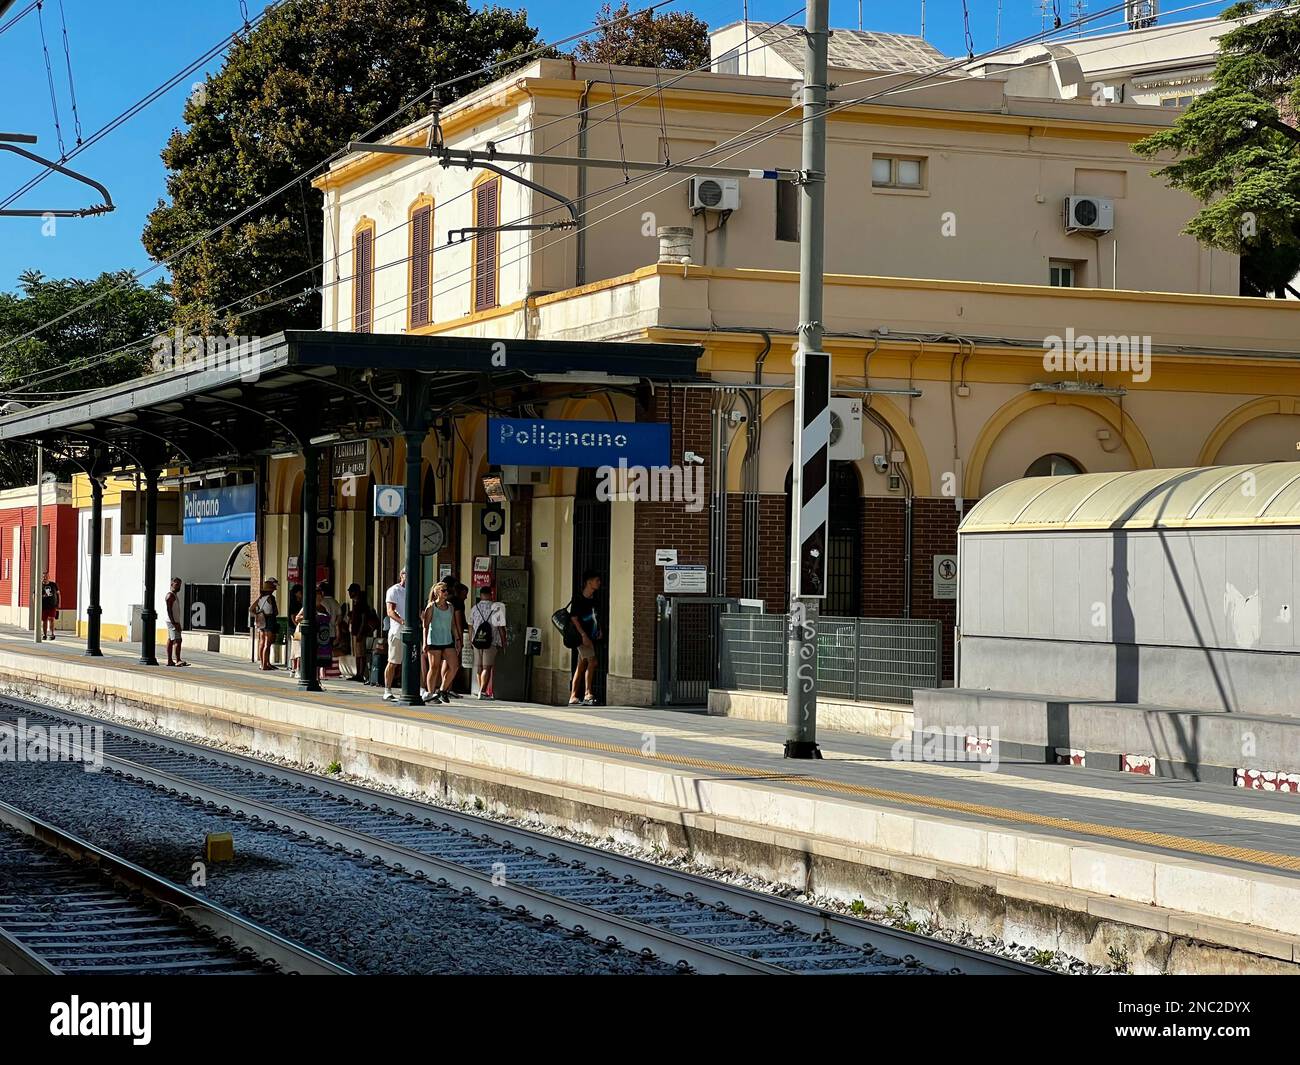 I passeggeri aspettano sotto il tetto alla stazione ferroviaria di Polignano a Mare. Foto Stock